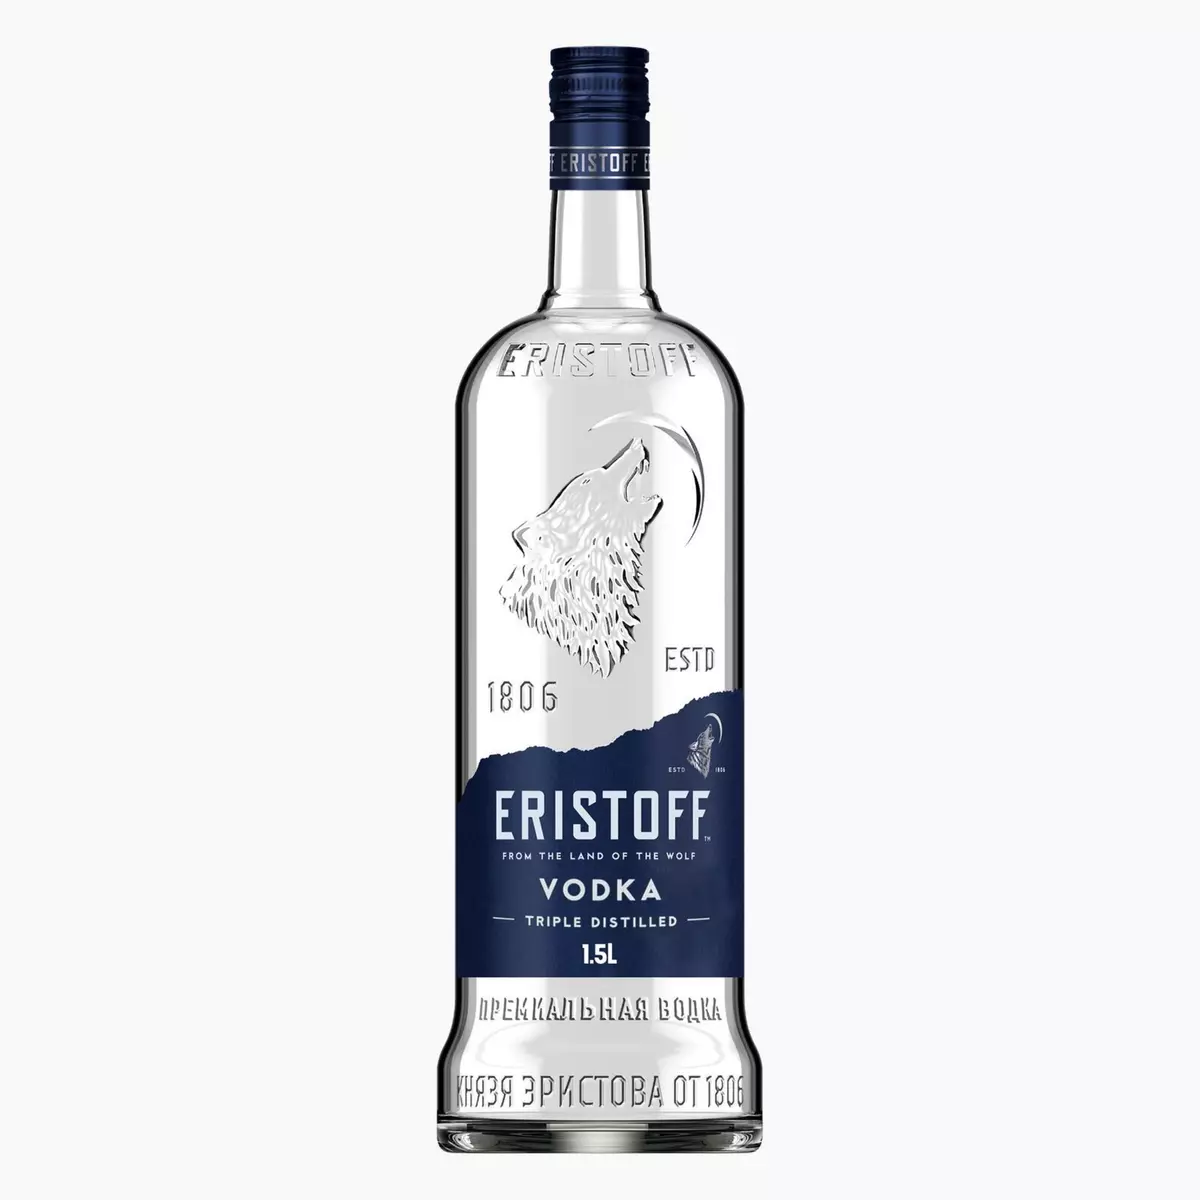 ERISTOFF Vodka brut 37,5% 1,5l